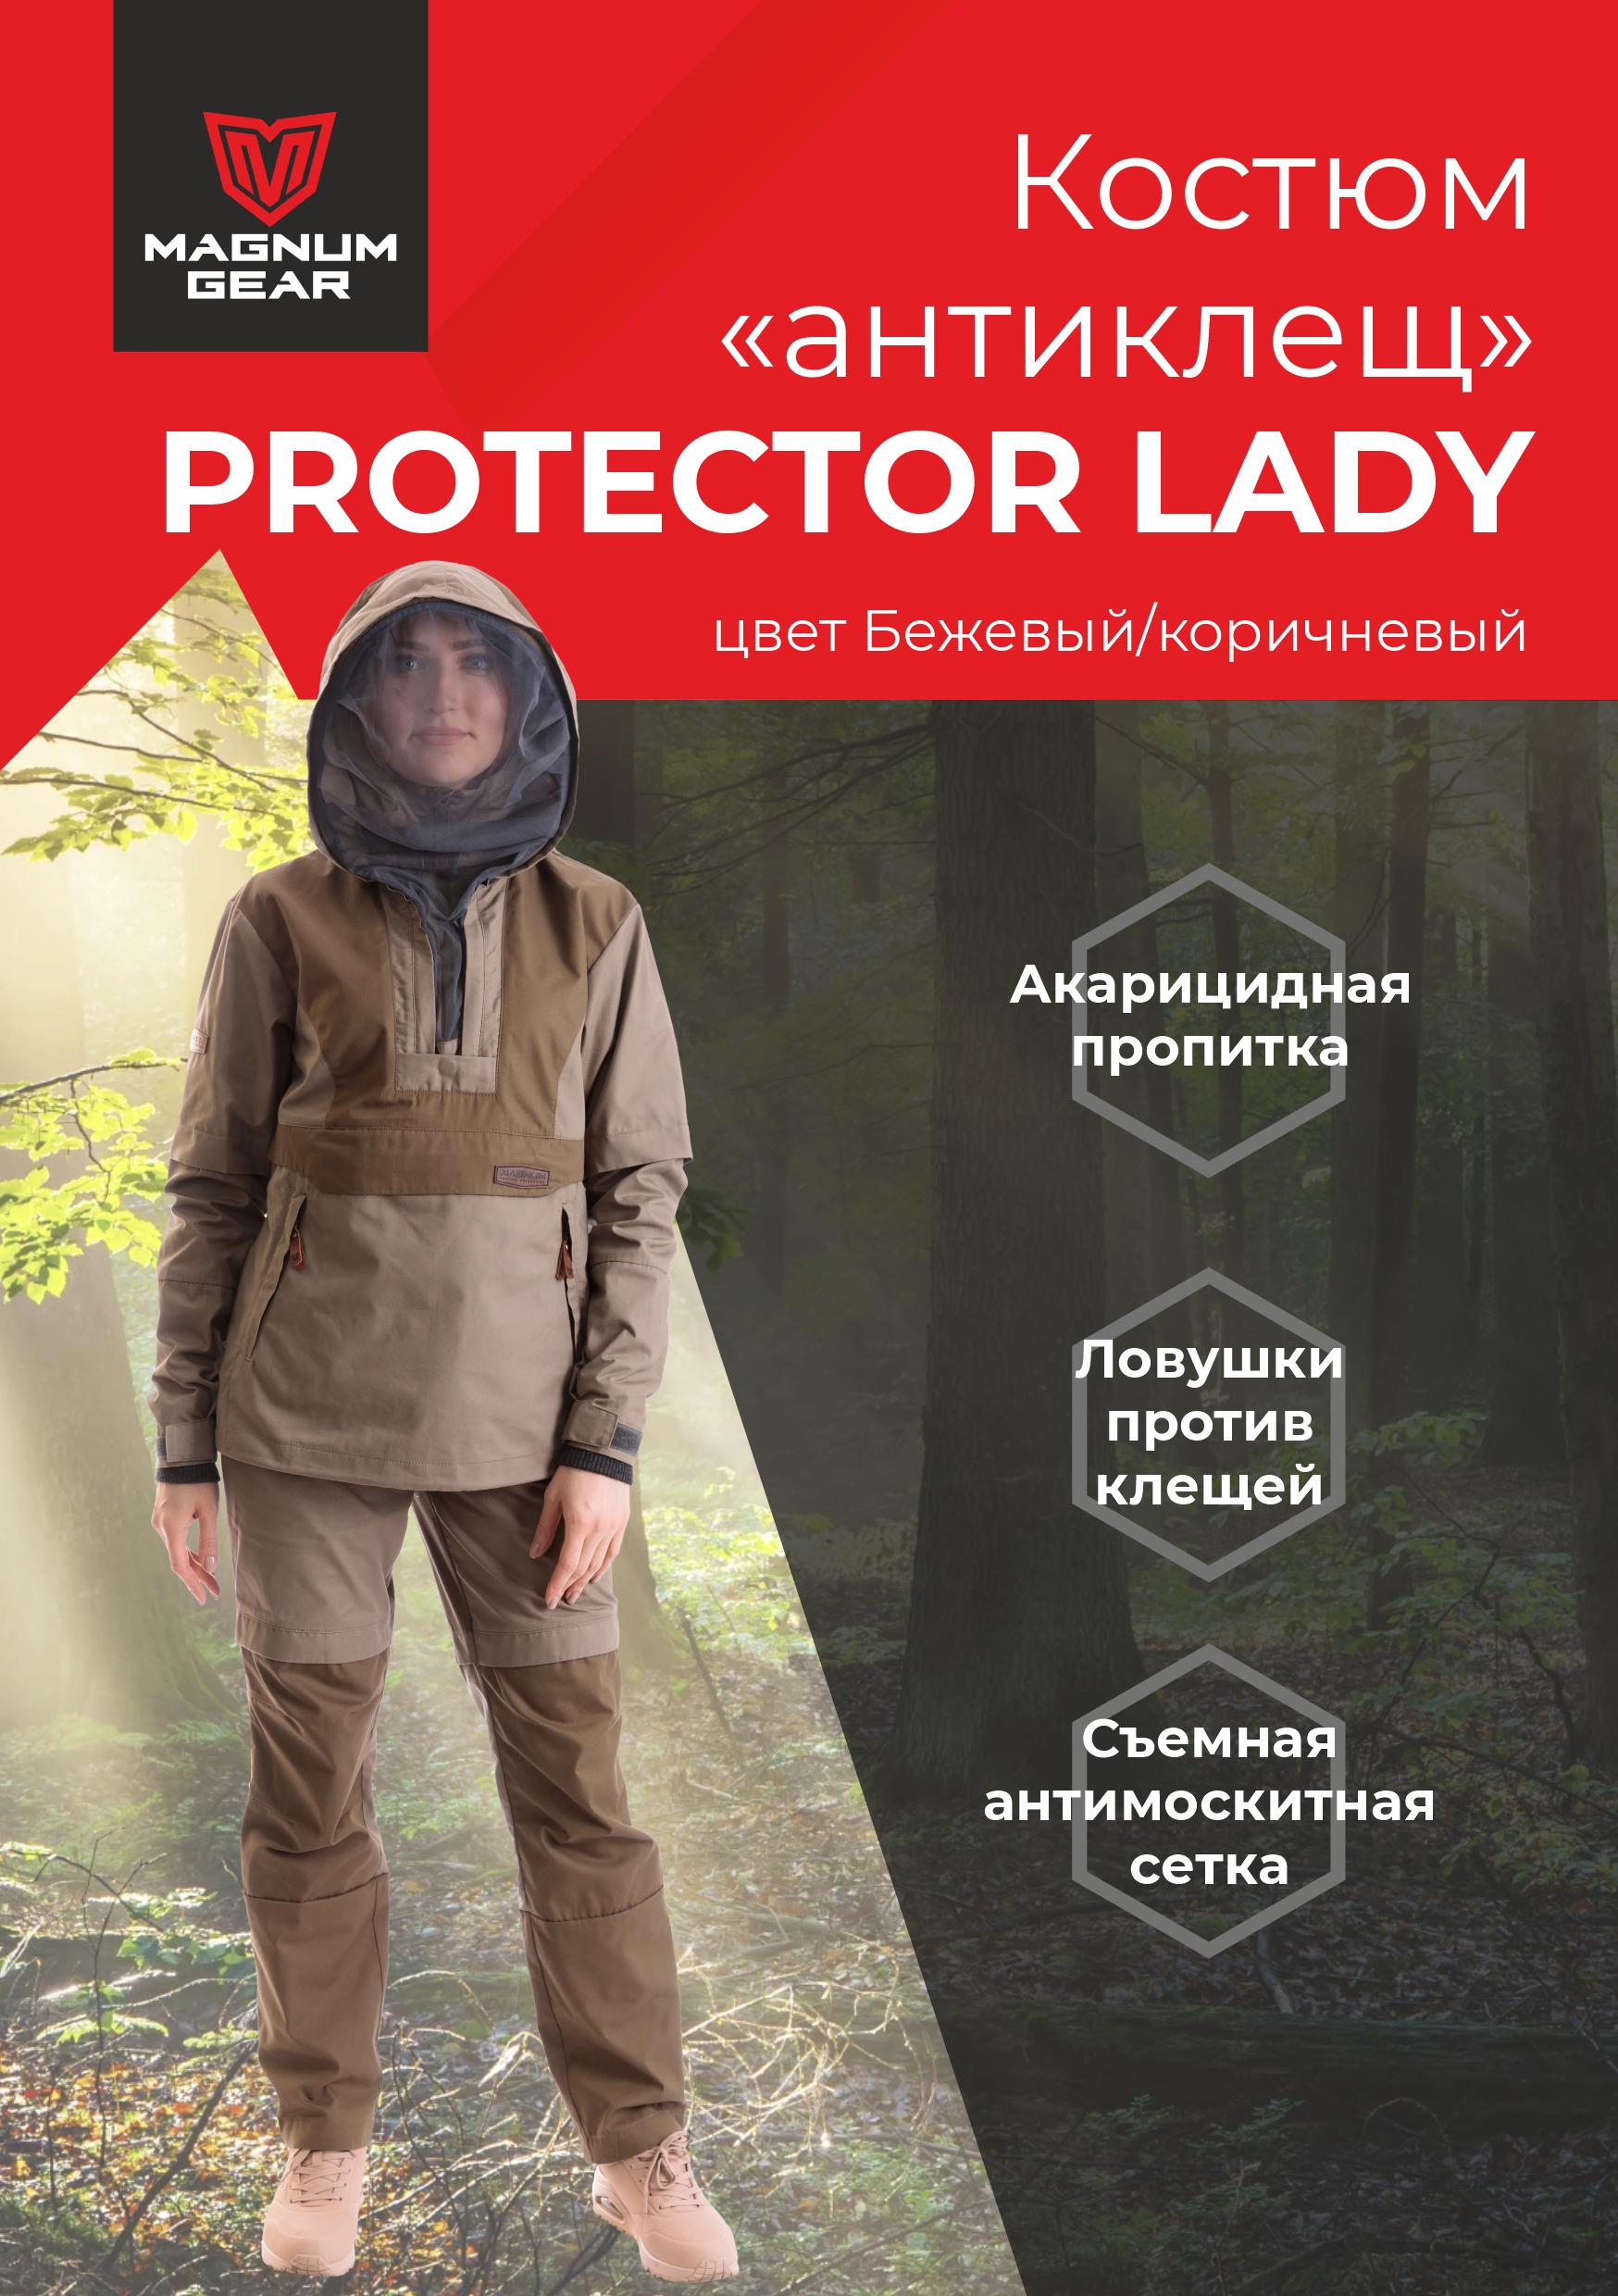 Костюм женский Magnum Gear, PROTECTOR LADY, бежевый/коричневый, размер S, рост 158-164